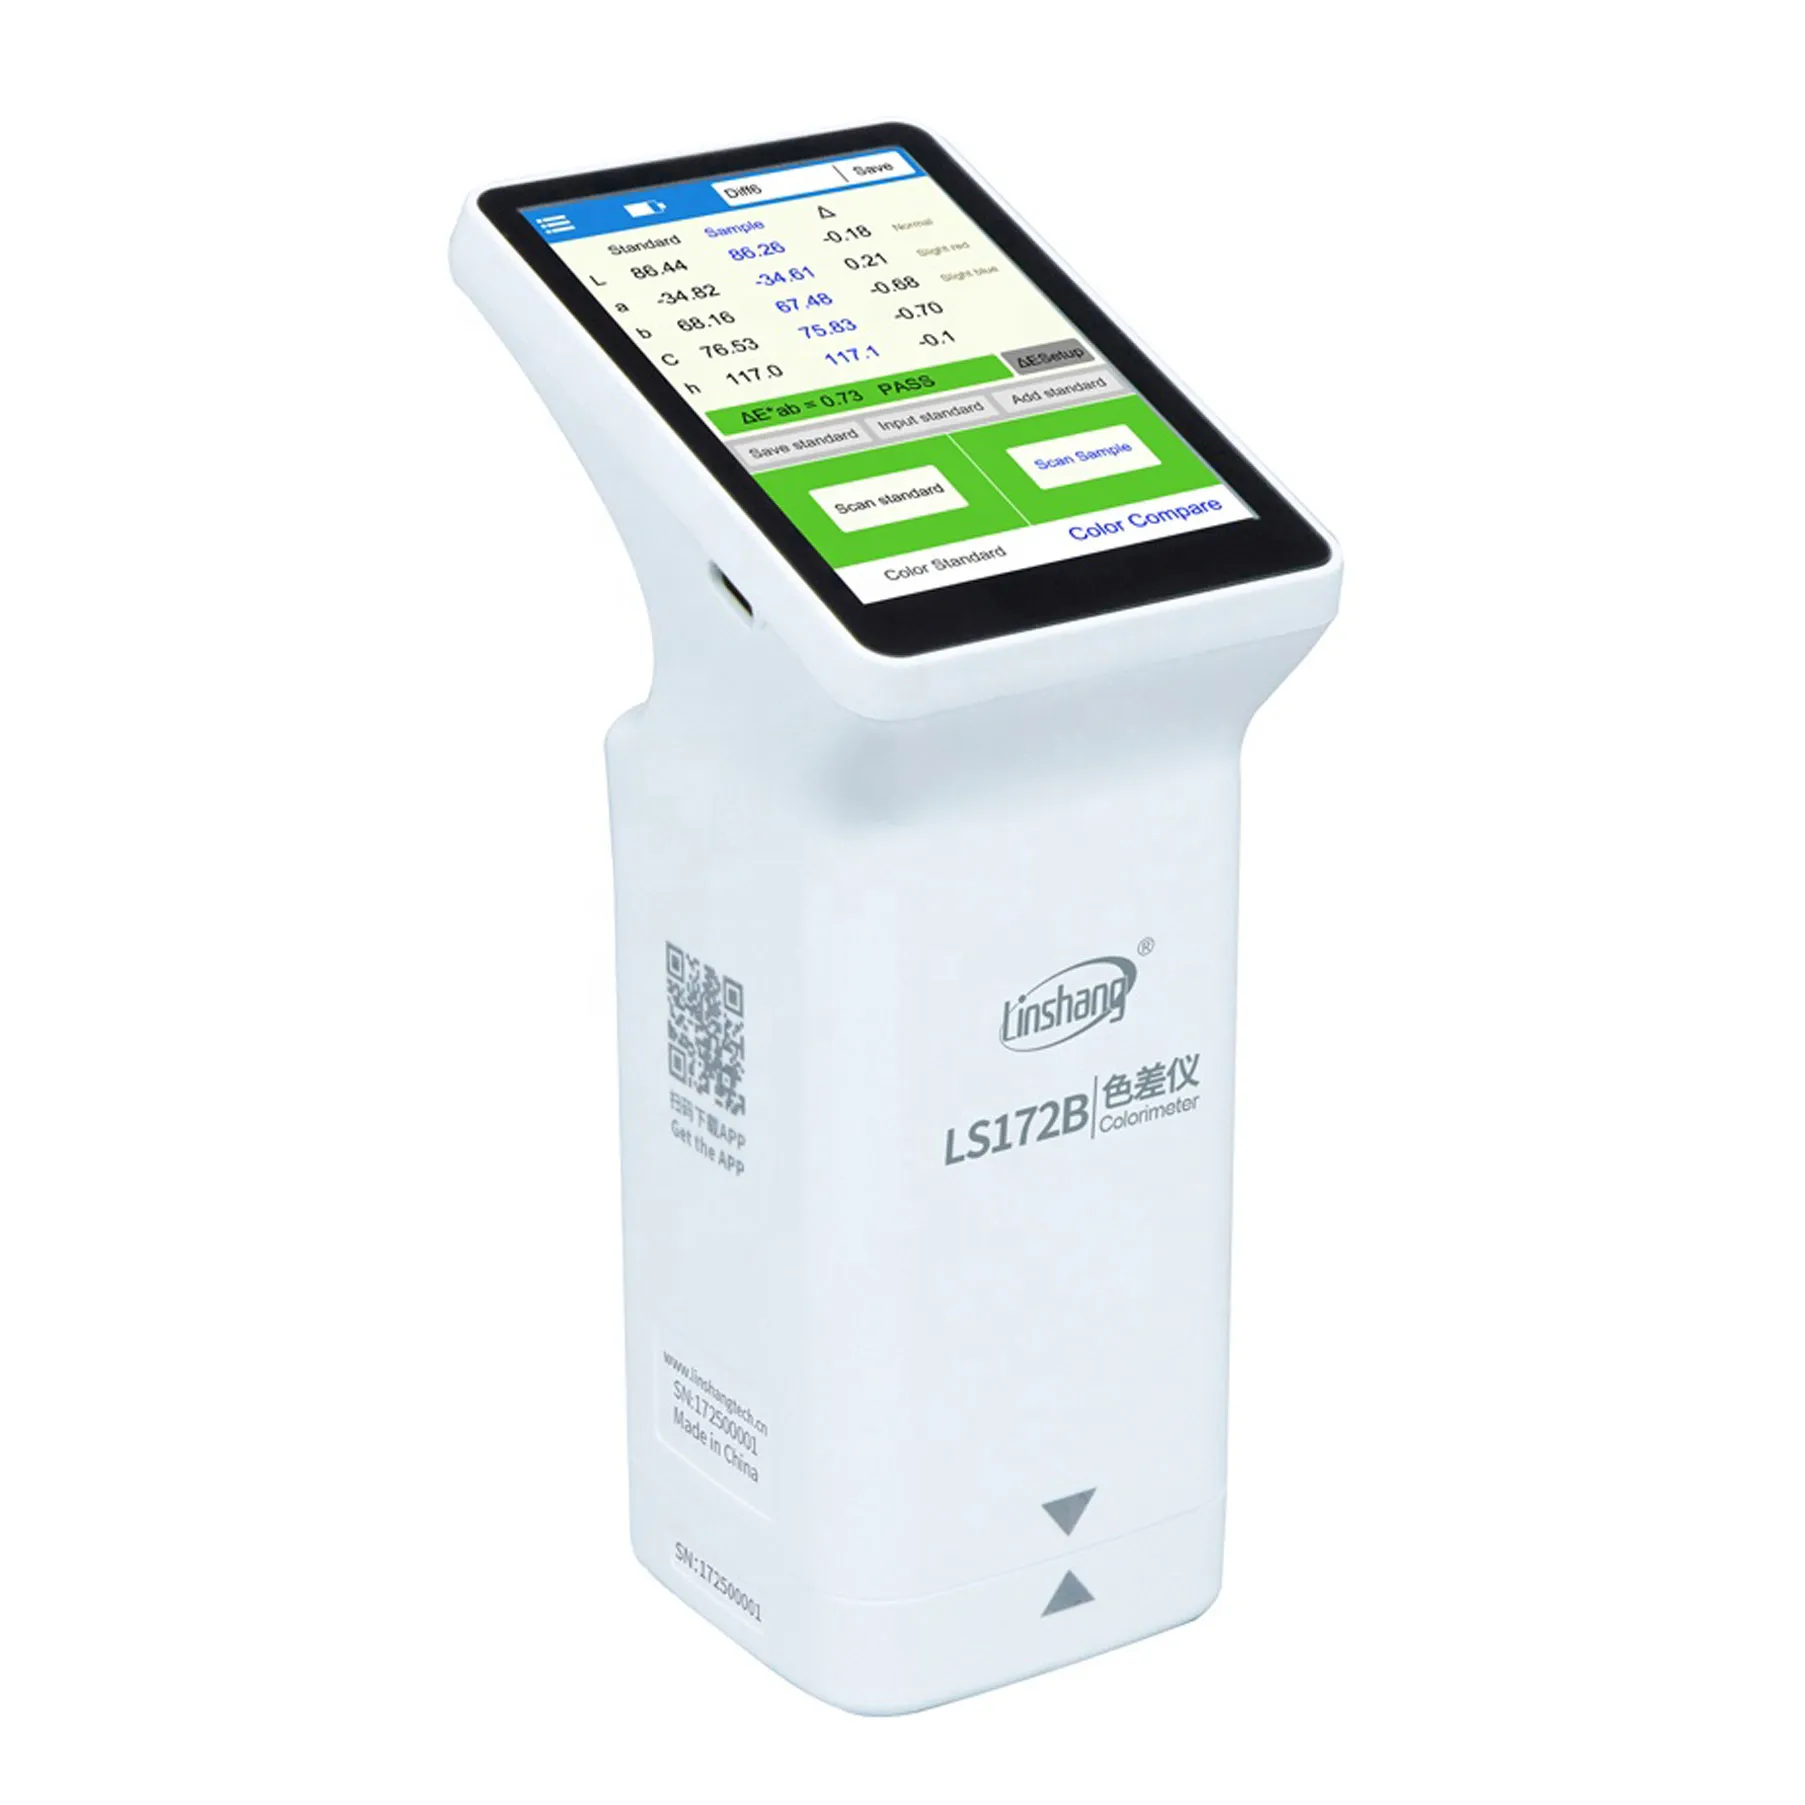 New LS172B 45/0 Colorímetro Smart Touch Screen Cor Difference Tester para tinta, impressão de papel, decorações ect indústrias